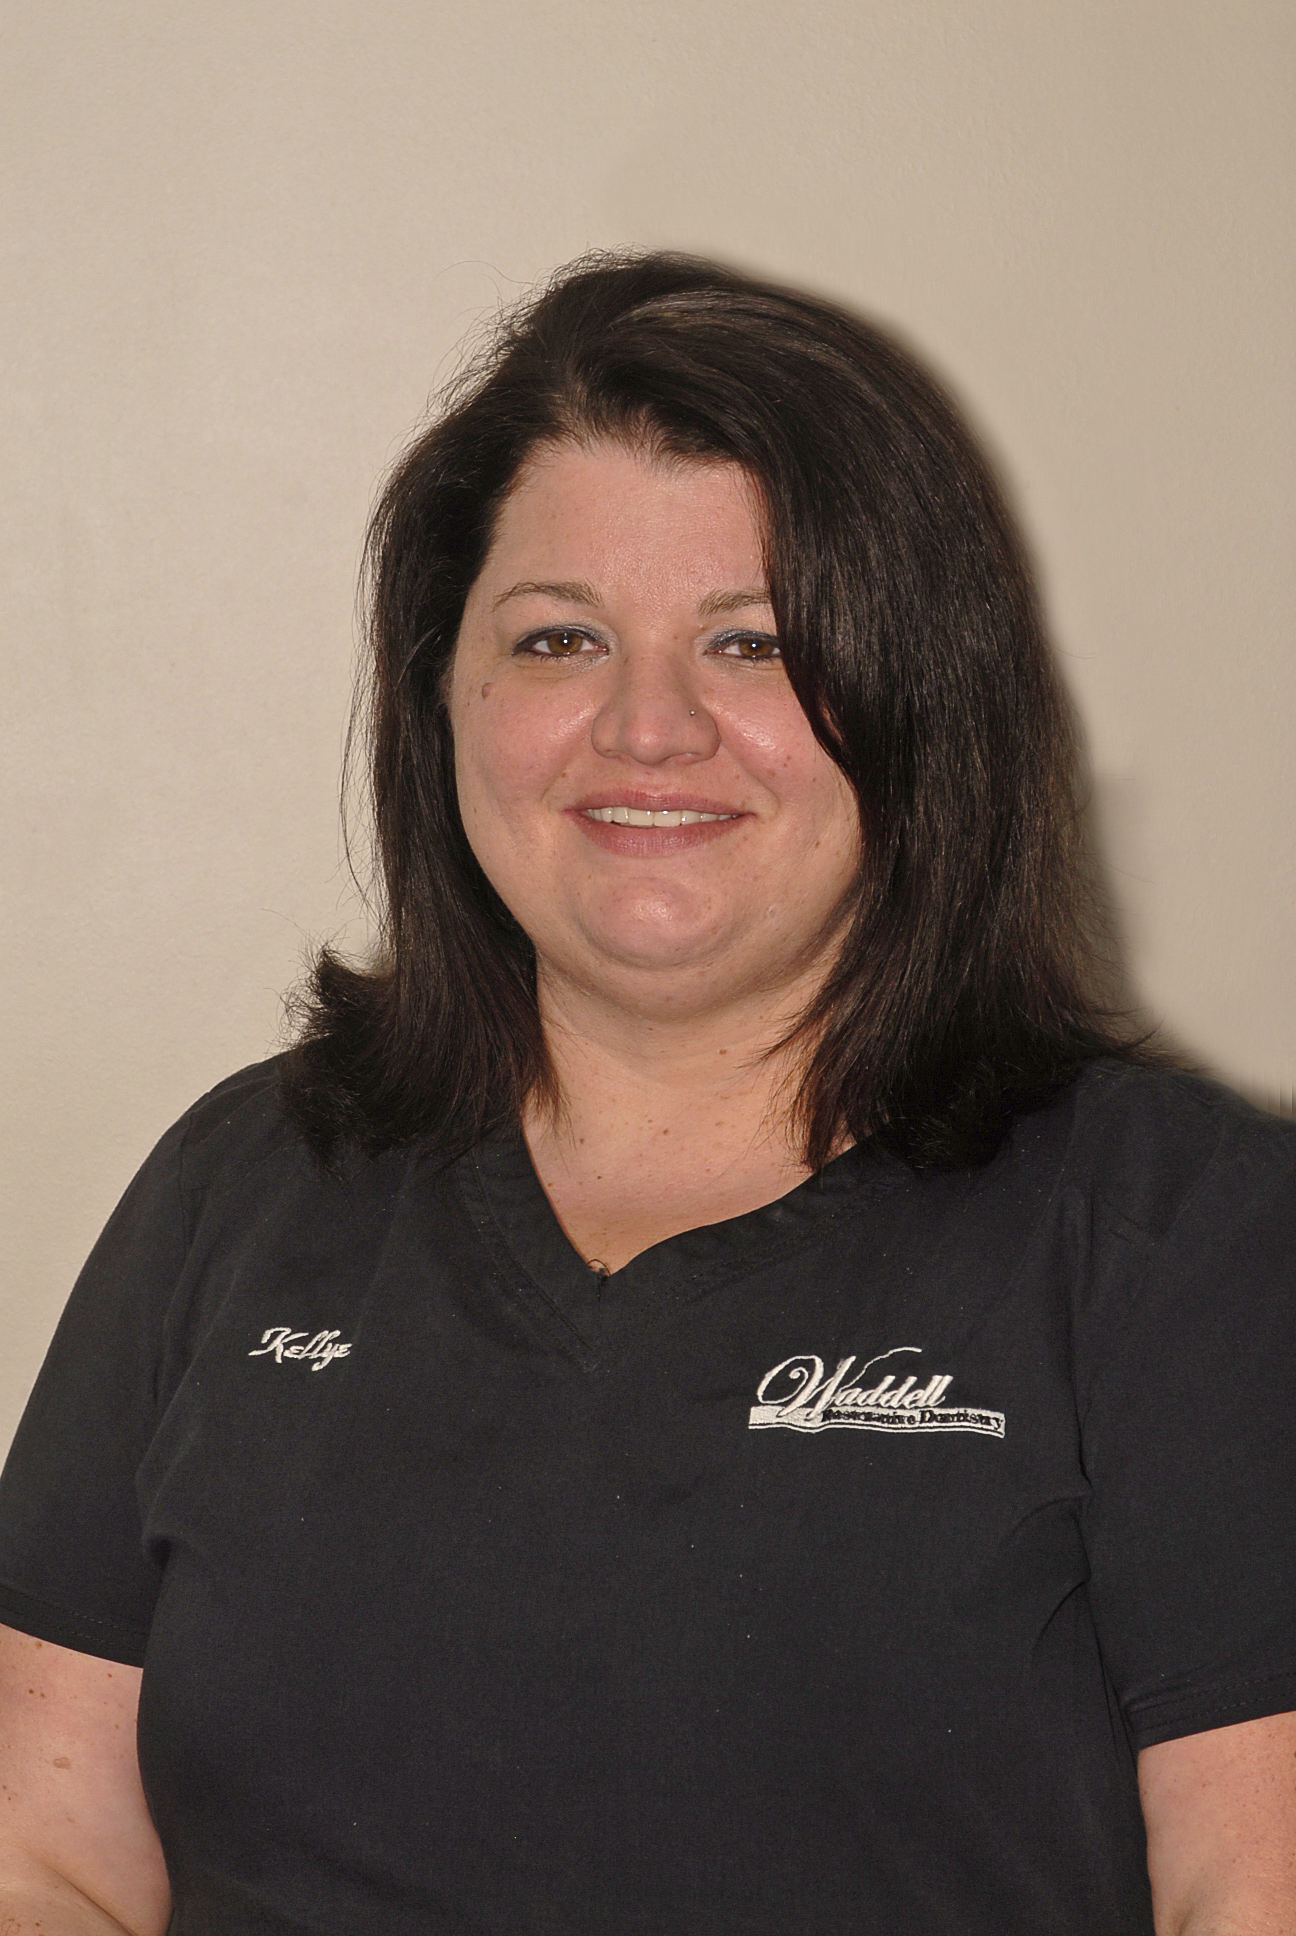 Kellye from Waddell Restorative Dentistry in Germantown, TN.